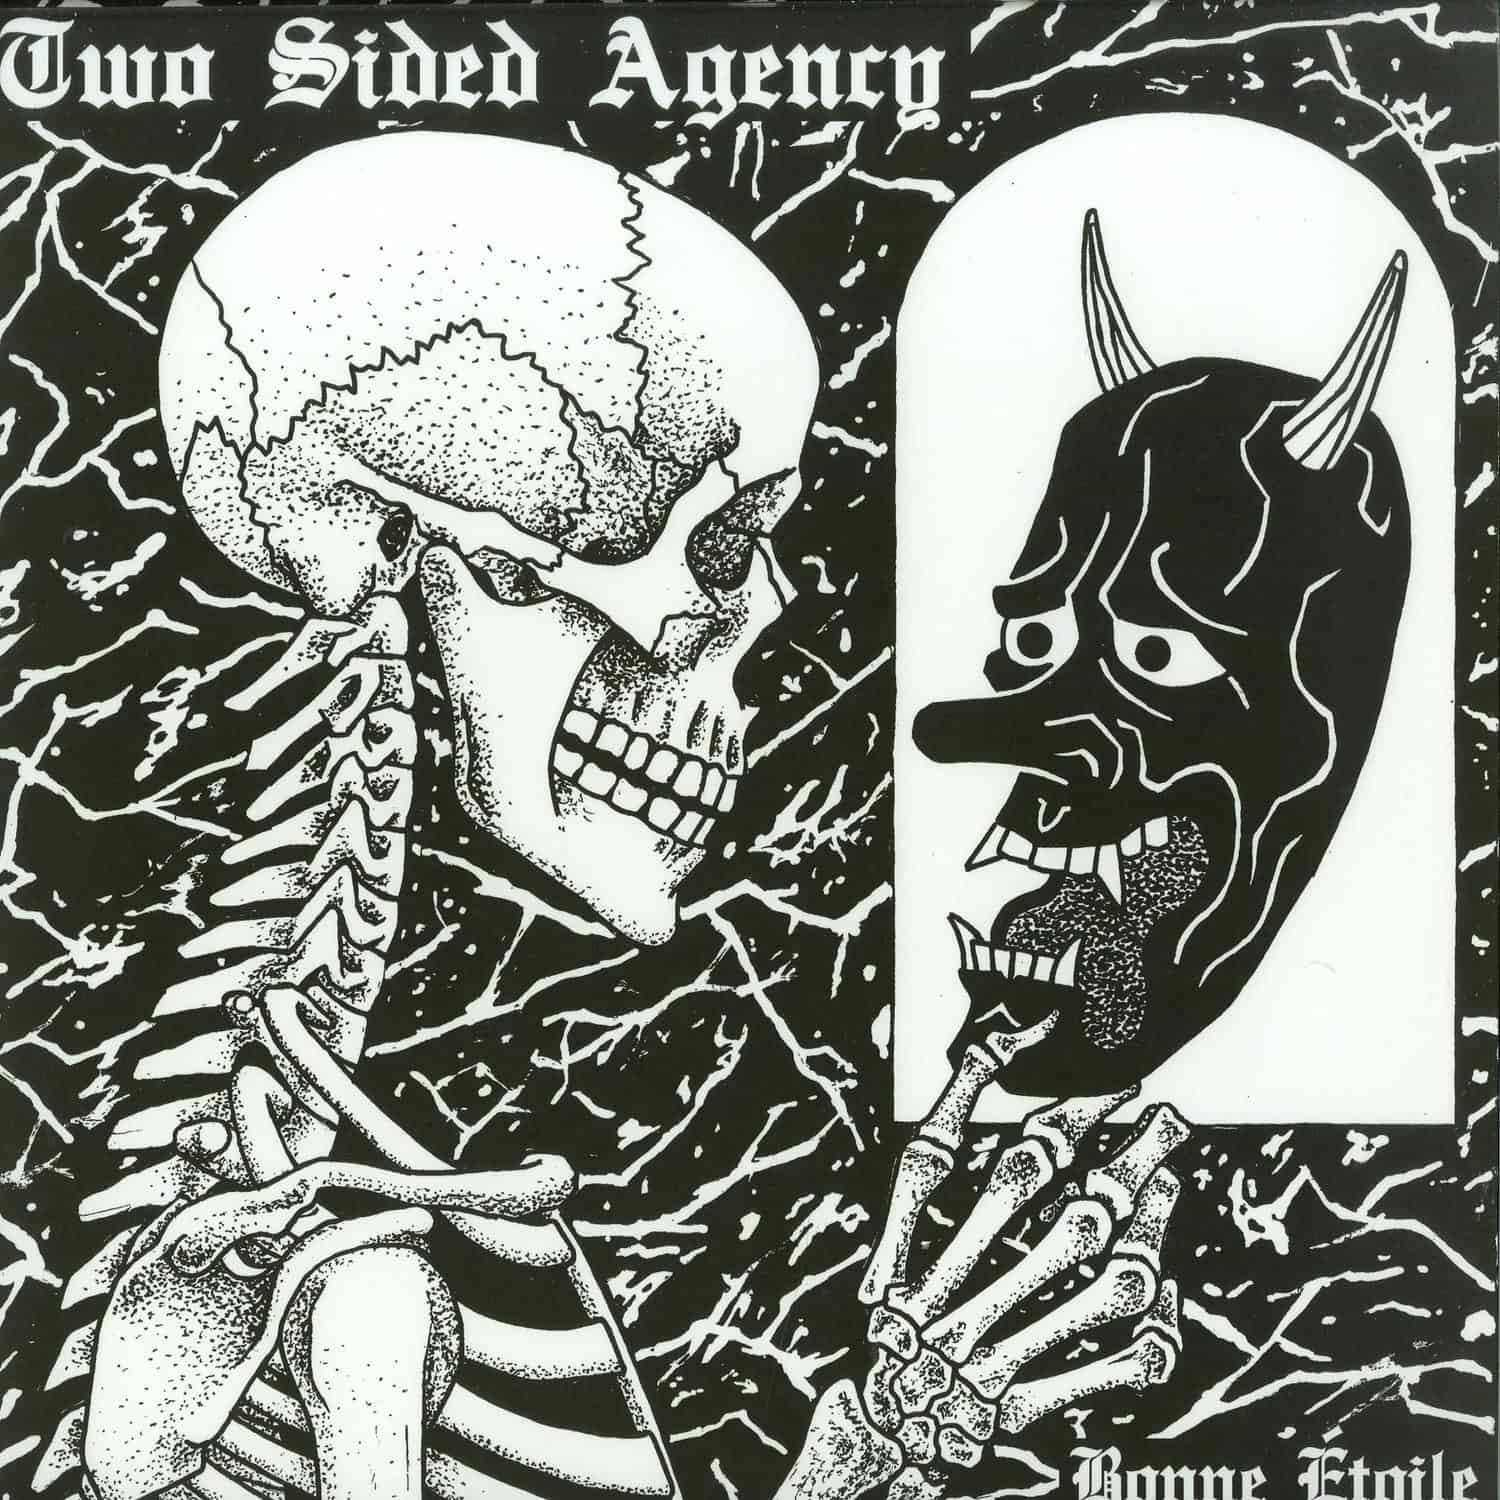 Two Sided Agency - BONNE ETOILE